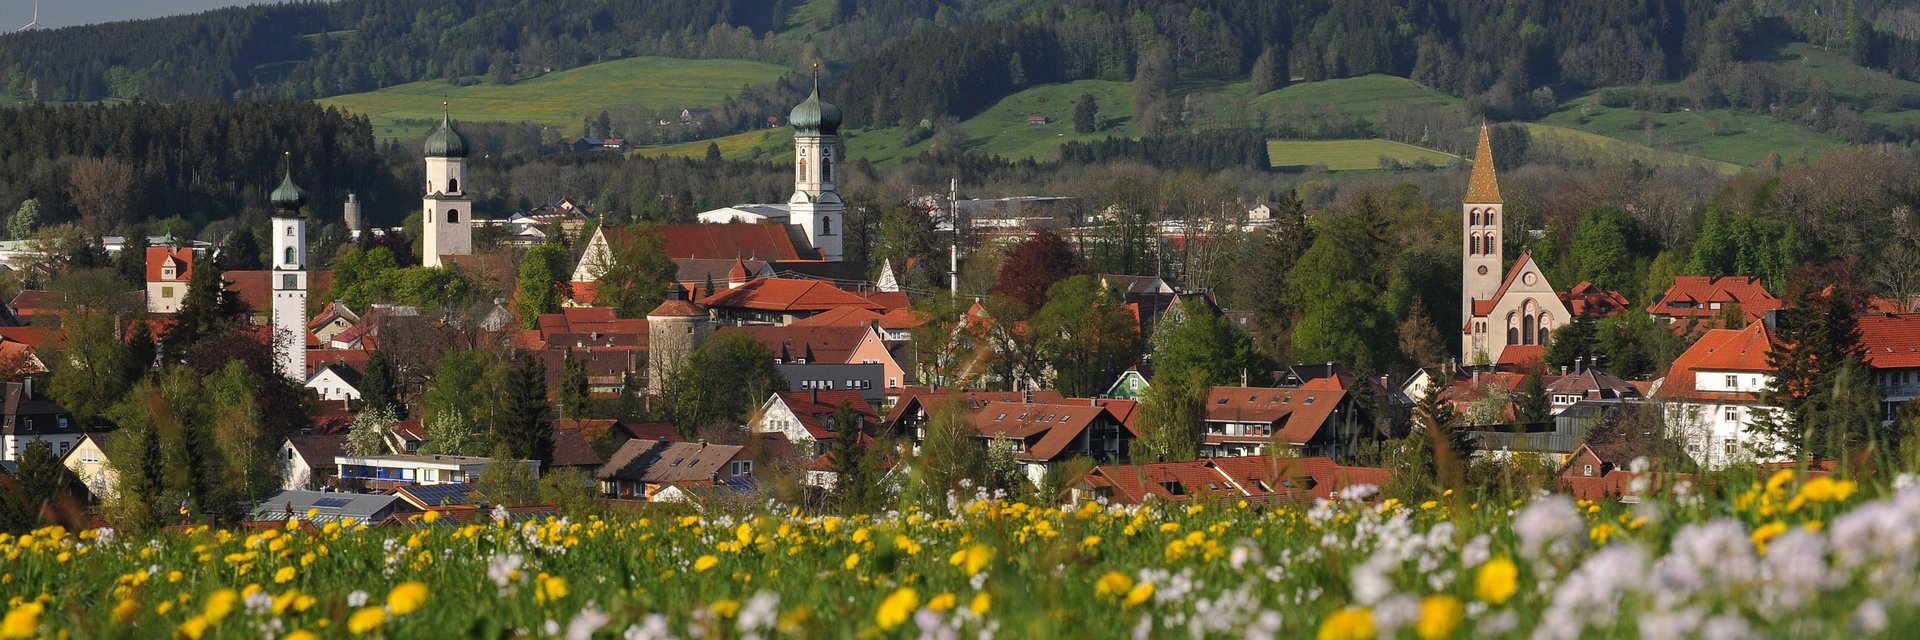 Die Stadt Isny mit vier Kirchtürmen und Hügel im Hintergrund